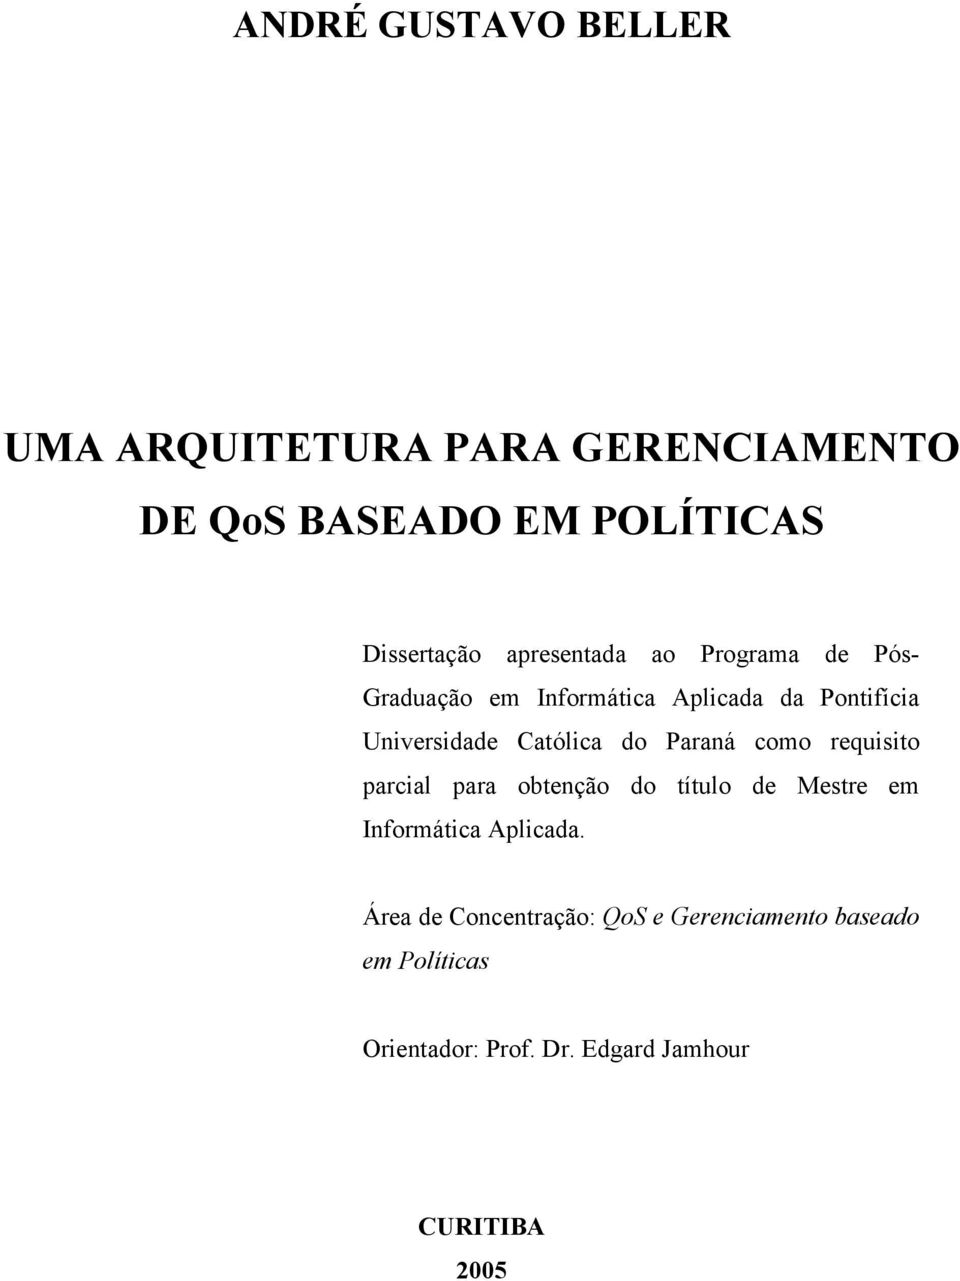 Católica do Paraná como requisito parcial para obtenção do título de Mestre em Informática Aplicada.